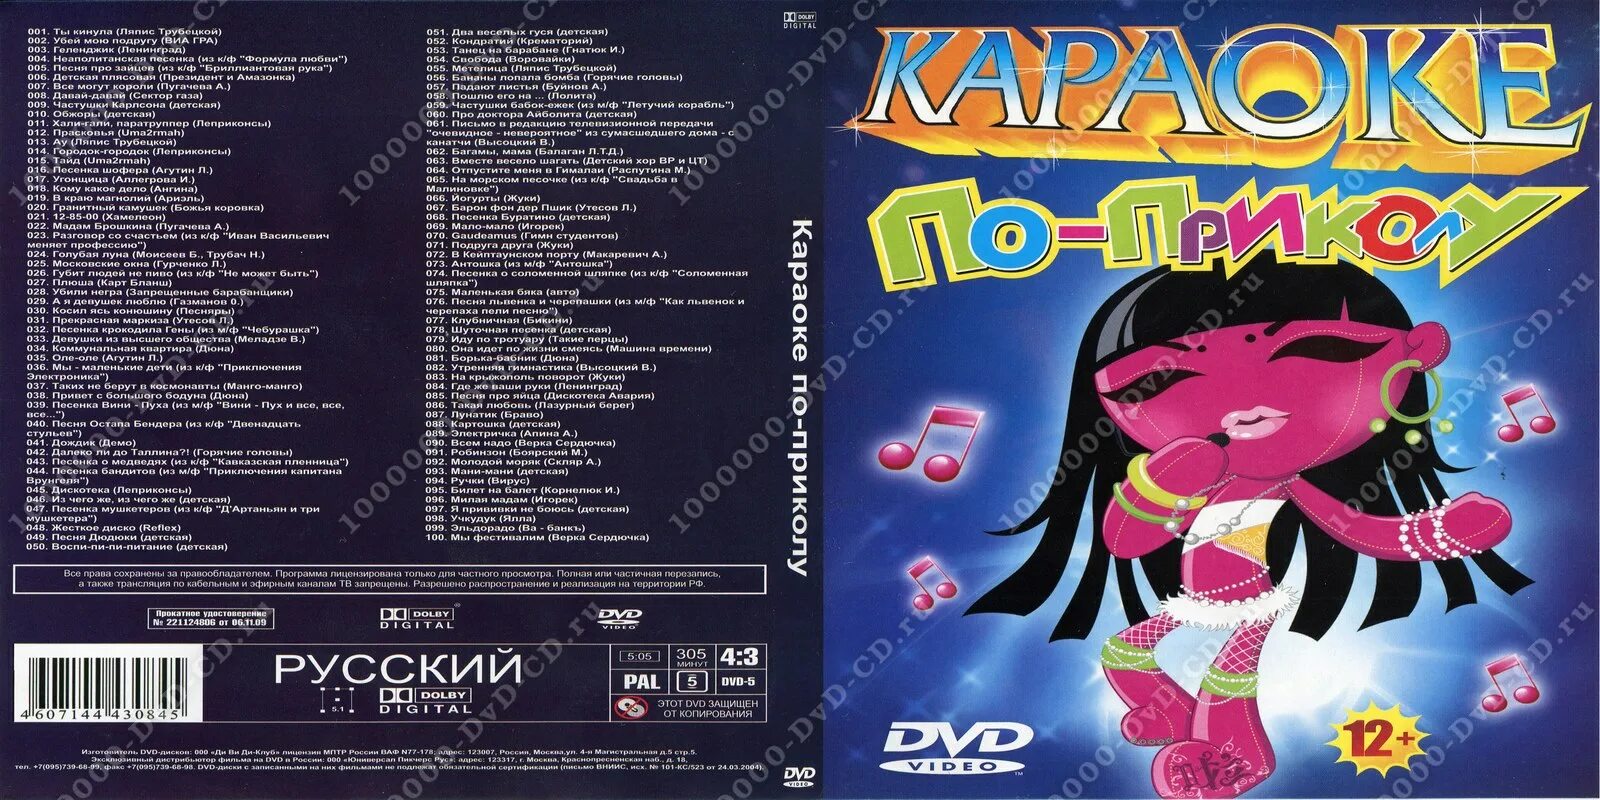 Веселая песня караоке современной. Караоке DVD. Караоке диск. Детское караоке диск. Диск детских песен караоке.